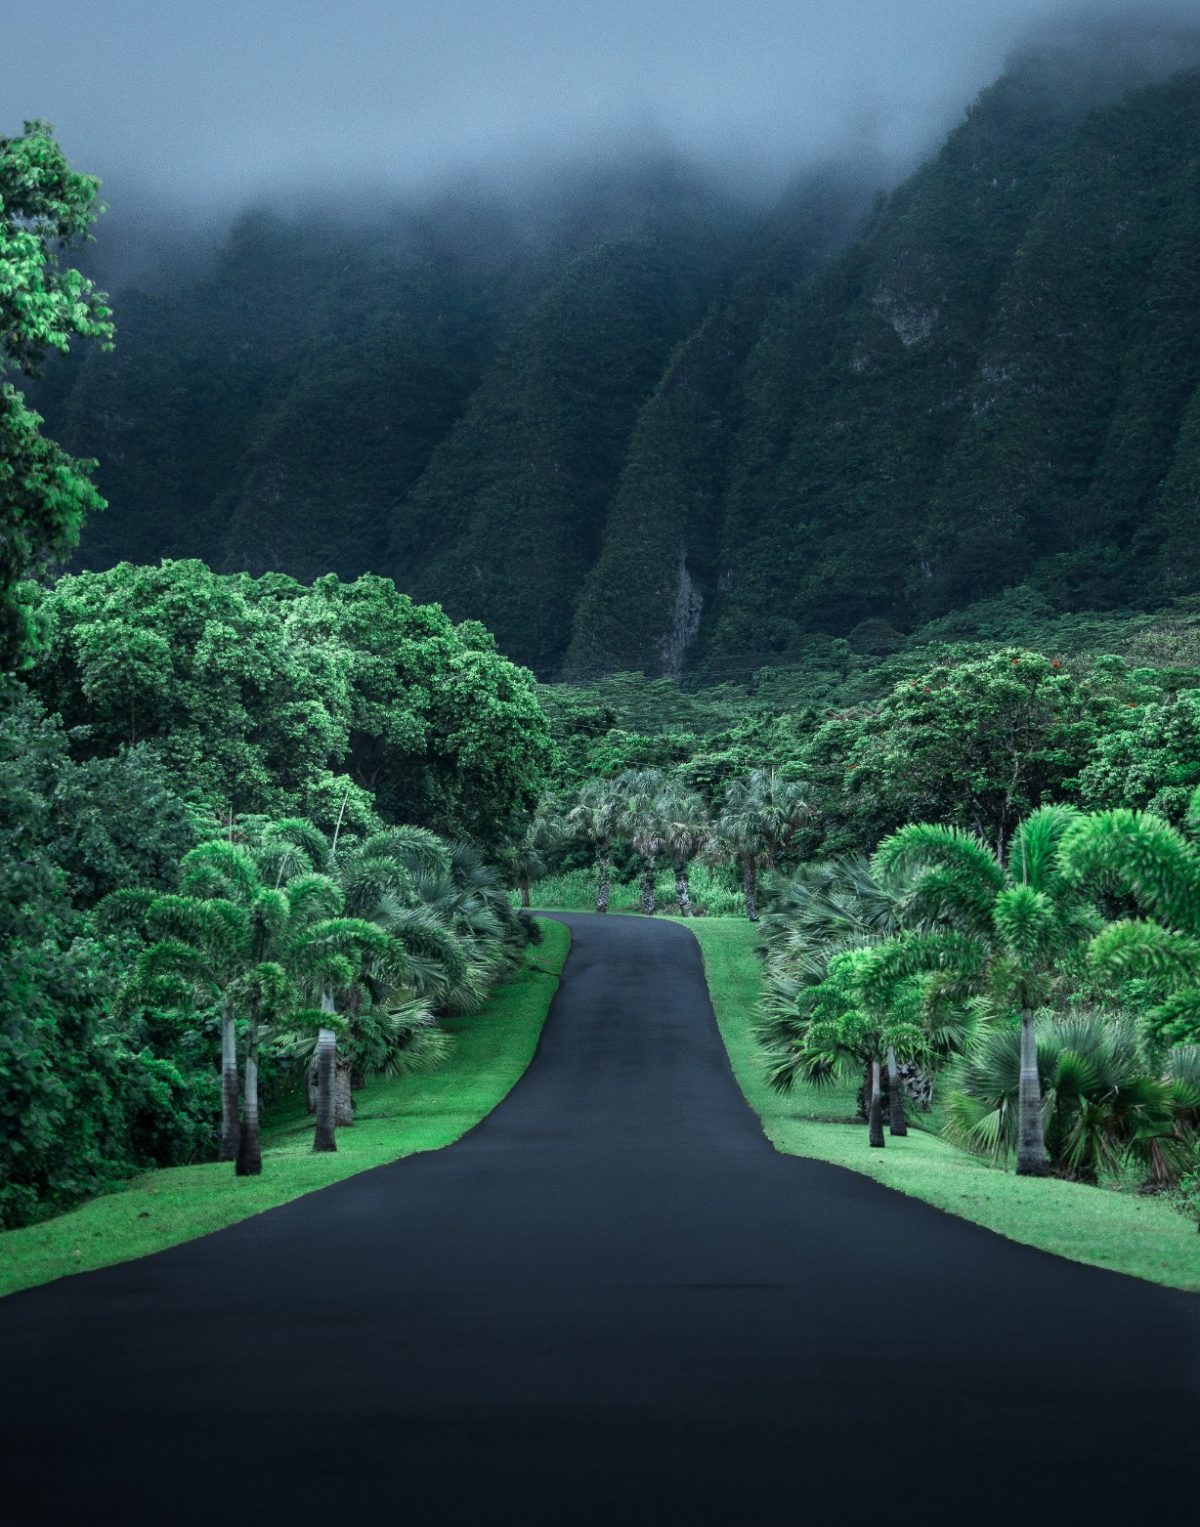 Une route goudronnée traverse des arbres et une végétation d'un vert éclatant, s'étendant au loin alors que des montagnes escarpées et des nuages ​​​​sombres s'élèvent dans le ciel.